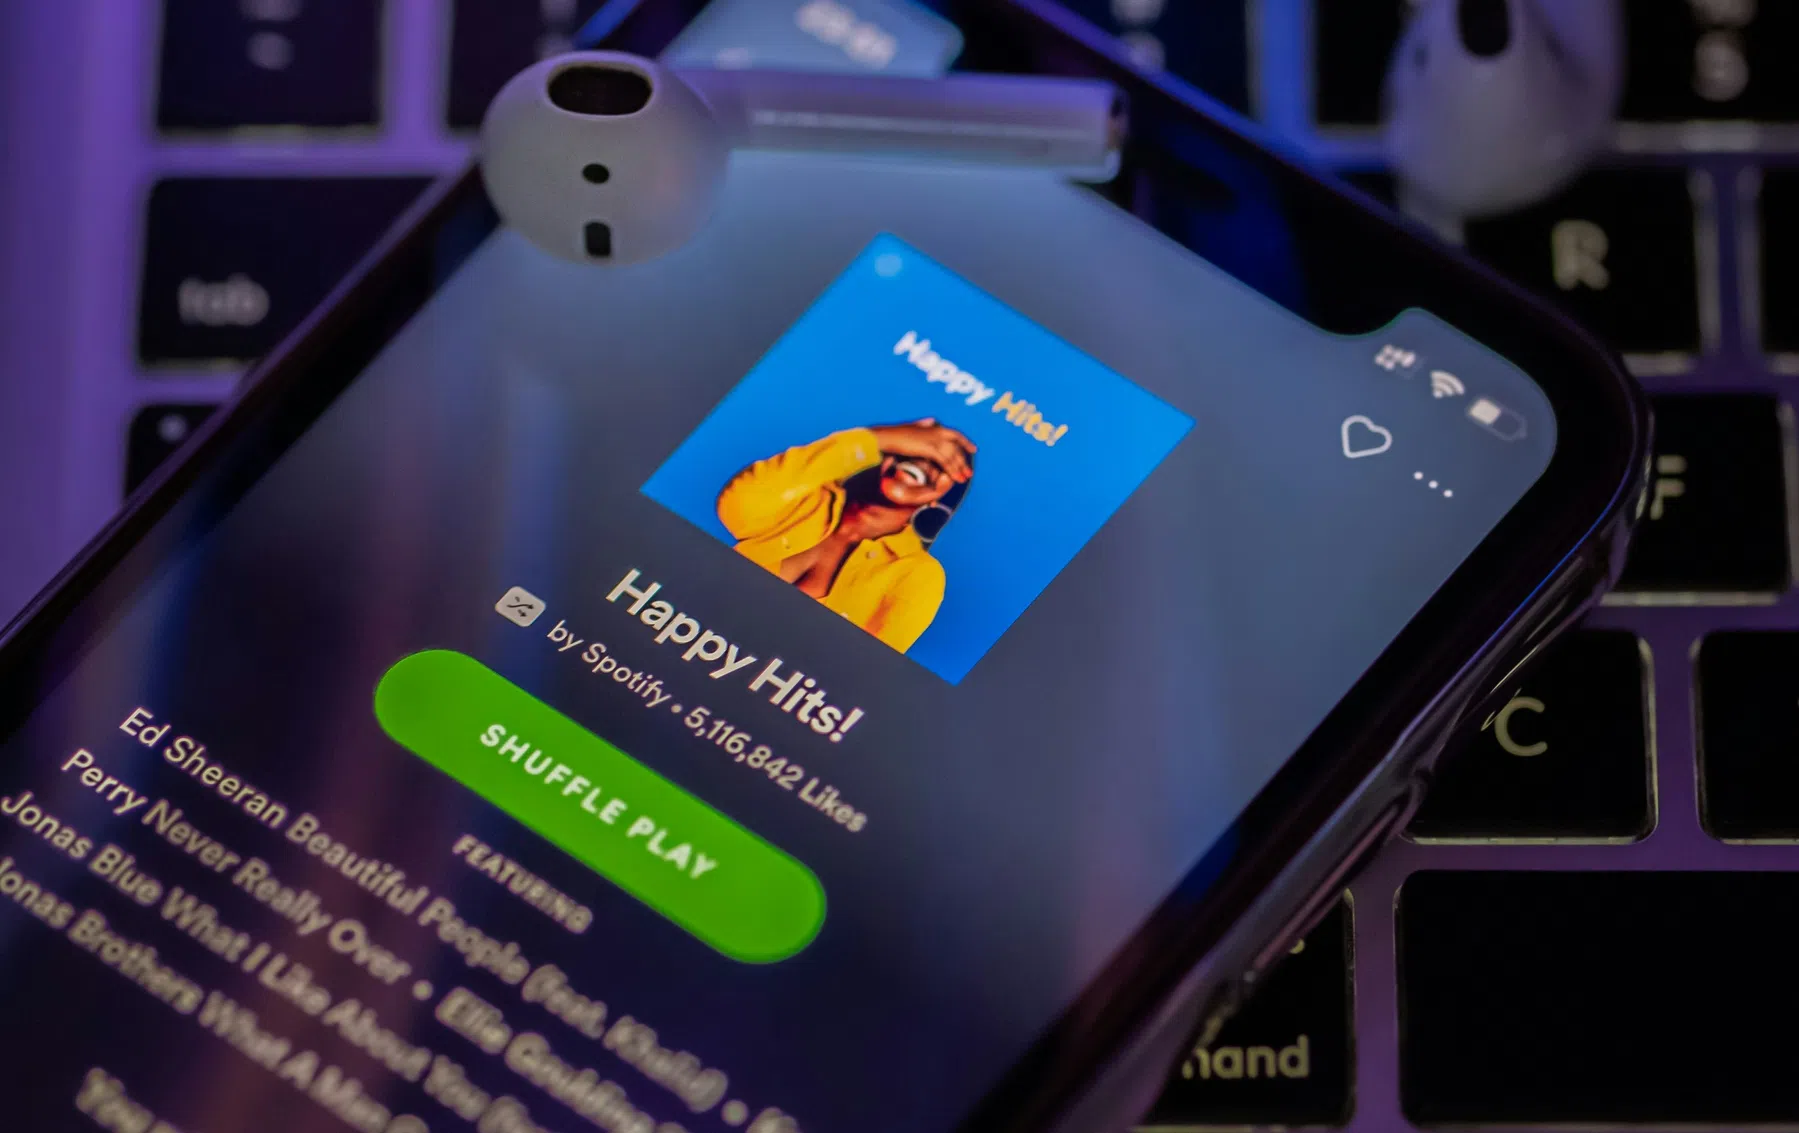 Miljardenboete voor Apple in Europa: 'App Store is oneerlijk voor muziekdiensten'